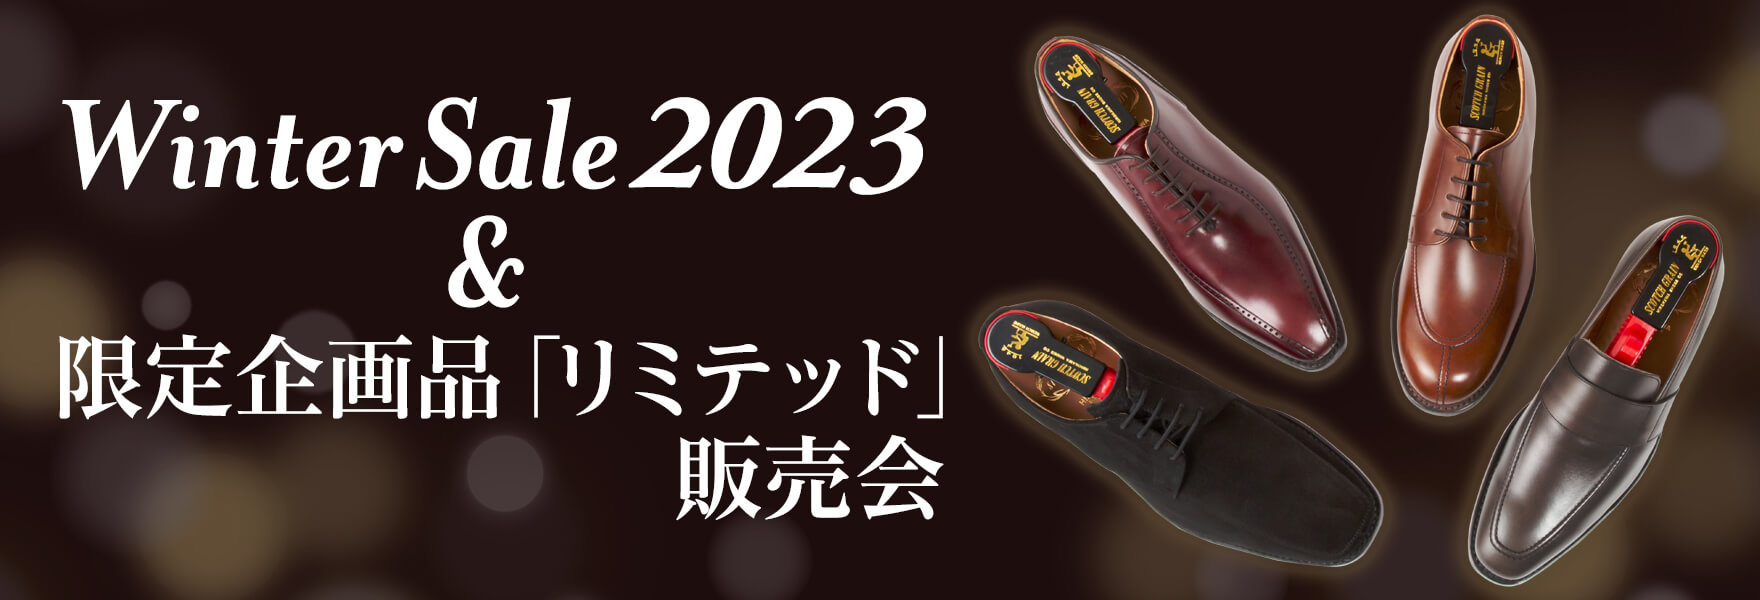 Winter Sale 2023 & 限定企画品「リミテッド」販売会 │ スコッチ